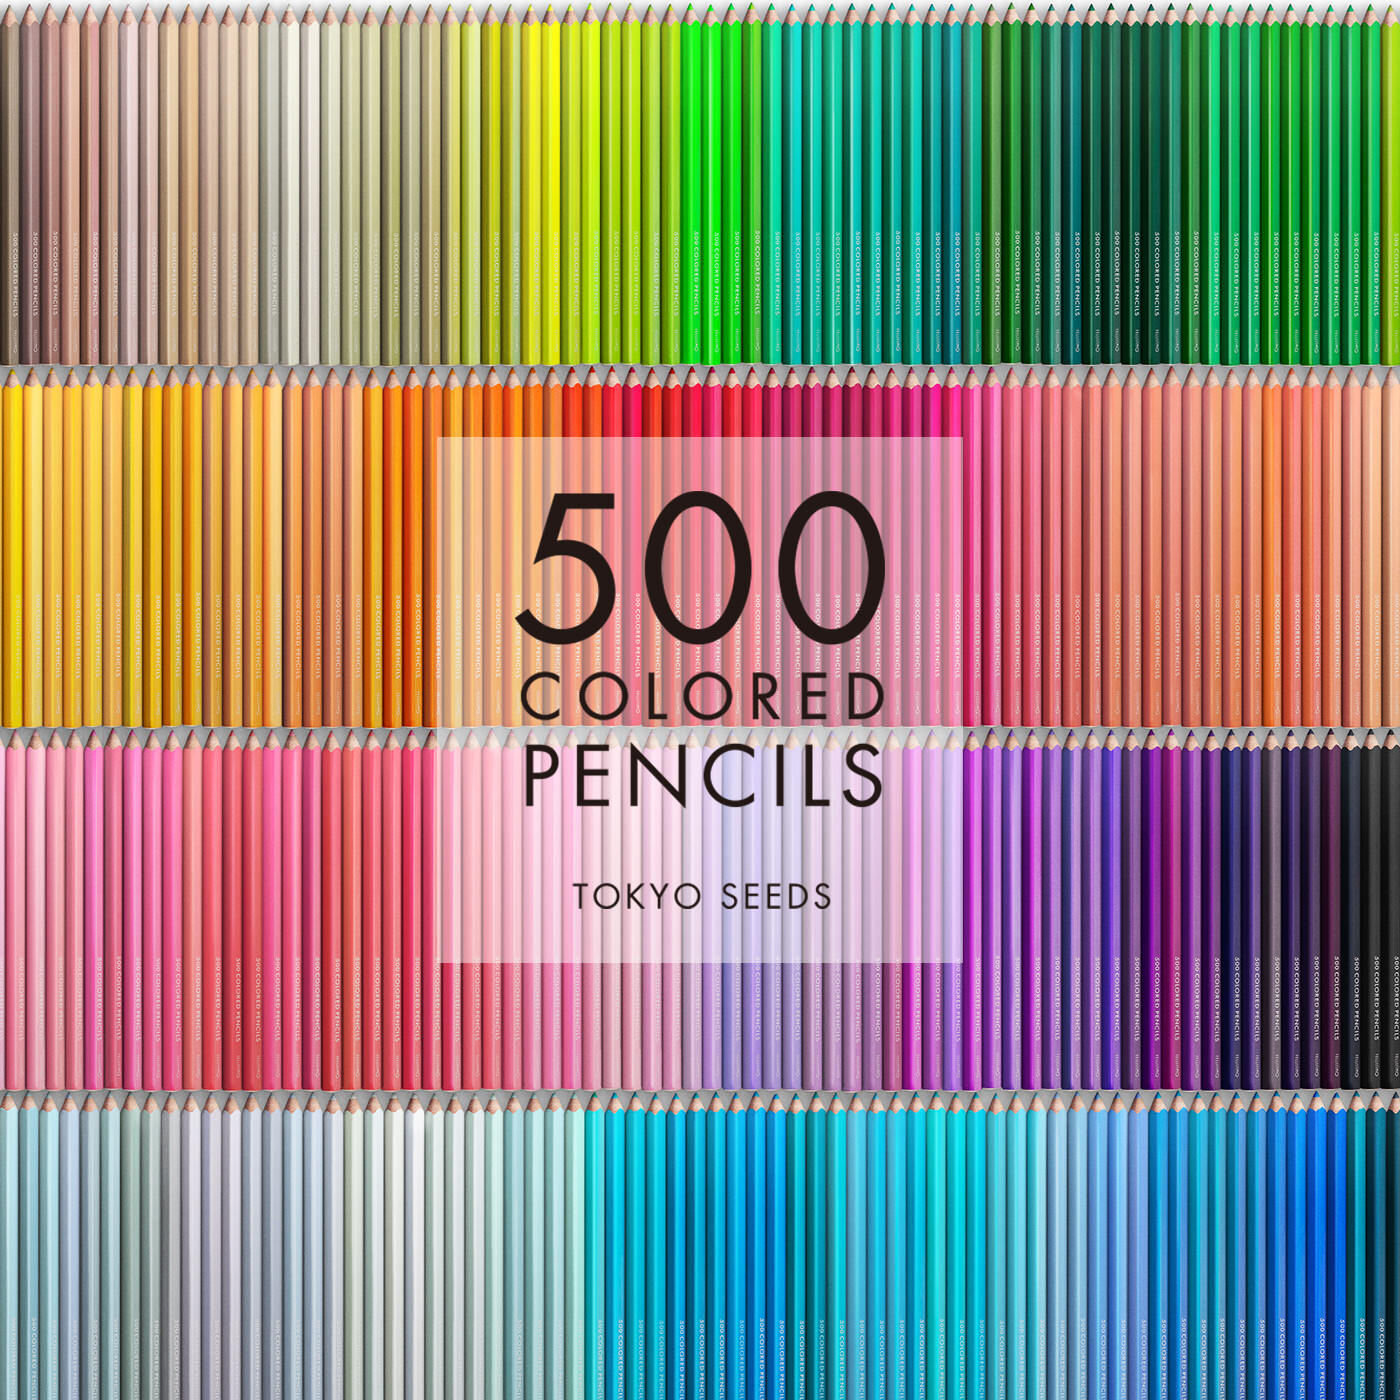 Real Stock|【172/500 HIGH SPLASH】500色の色えんぴつ TOKYO SEEDS|1992年、世界初の「500色」という膨大な色数の色えんぴつが誕生して以来、その販売数は発売当初から合わせると、世界55ヵ国10万セット以上。今回、メイド・イン・ジャパンにこだわり、すべてが新しく生まれ変わって登場しました。